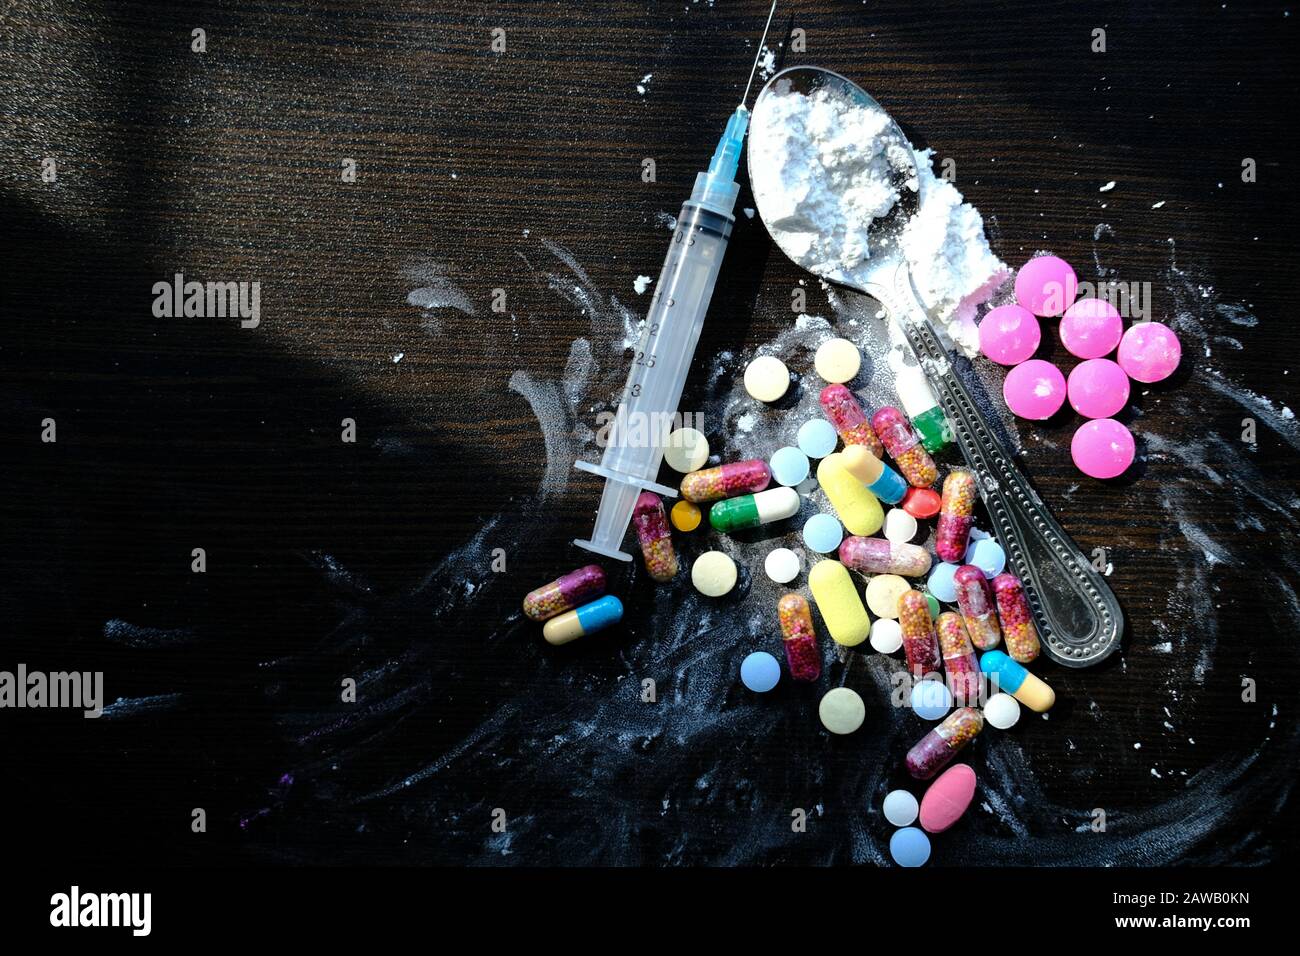 drogue, pilules et héroïne sur la table, vue de dessus Banque D'Images